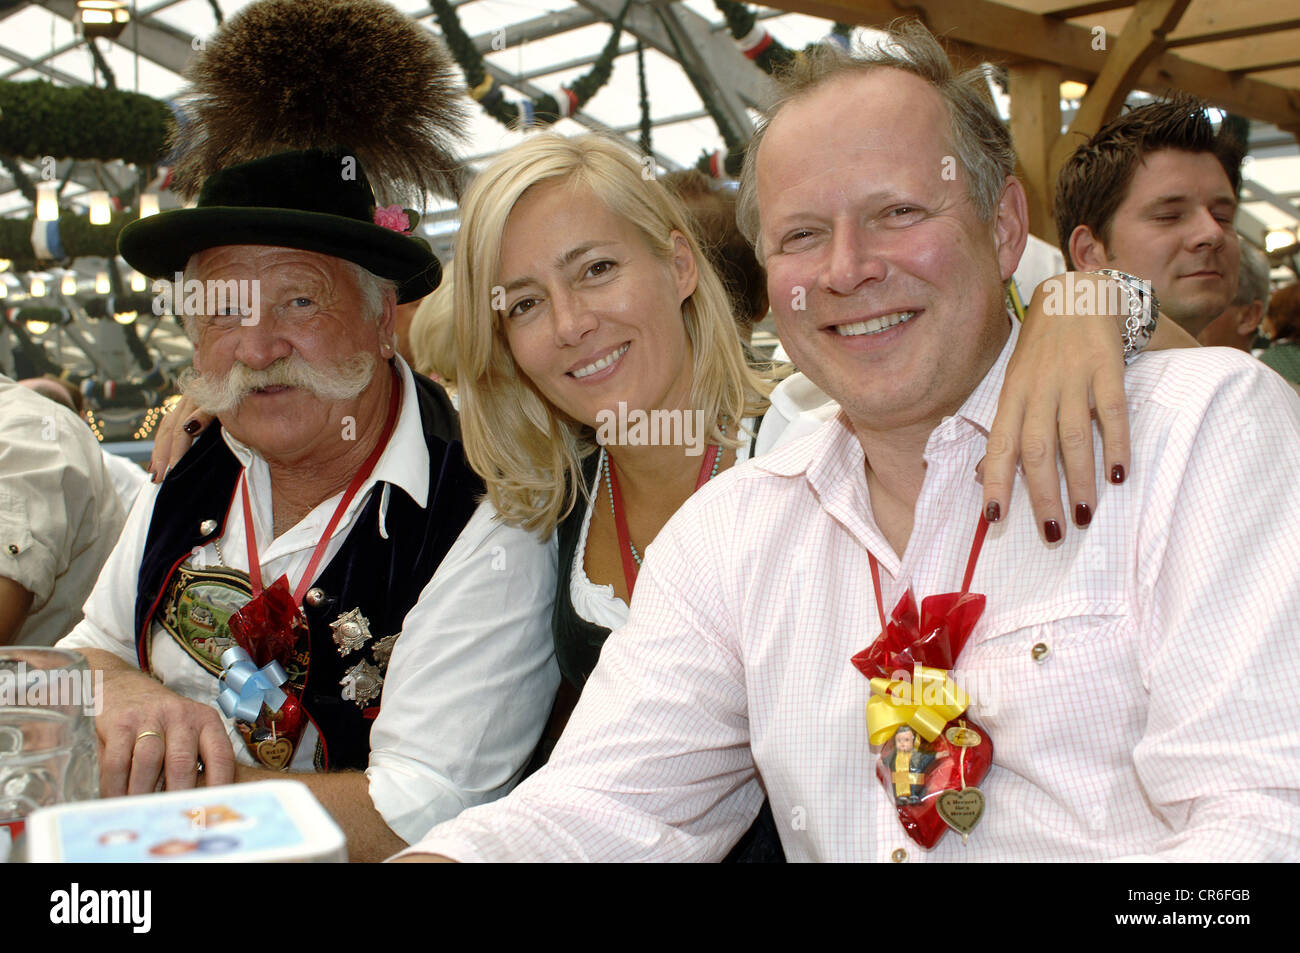 Milberg, Axel, * 1.8.1956, attore tedesco, mezza lunghezza con Franz Küfer e Judith Milberg, in tenda da birra Schottenhamel, Oktoberfest, Monaco, 22.9.2007, Foto Stock